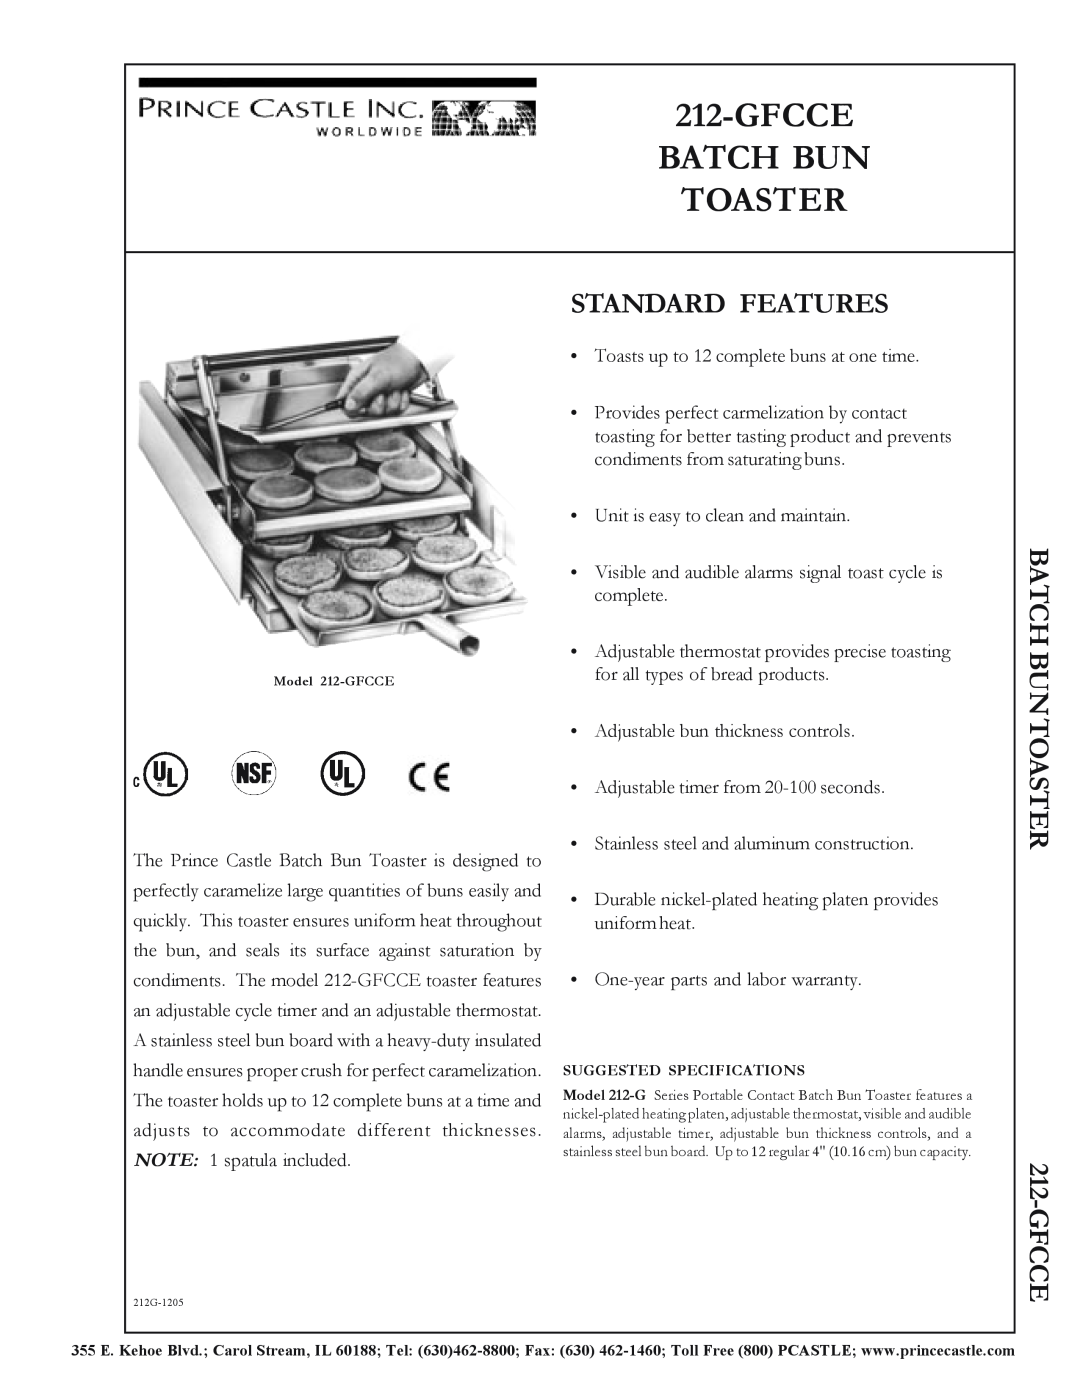 Prince Castle 212-GFCCE warranty Gfccebatch Bun Toaster, Standard Features, Batch Buntoaster 